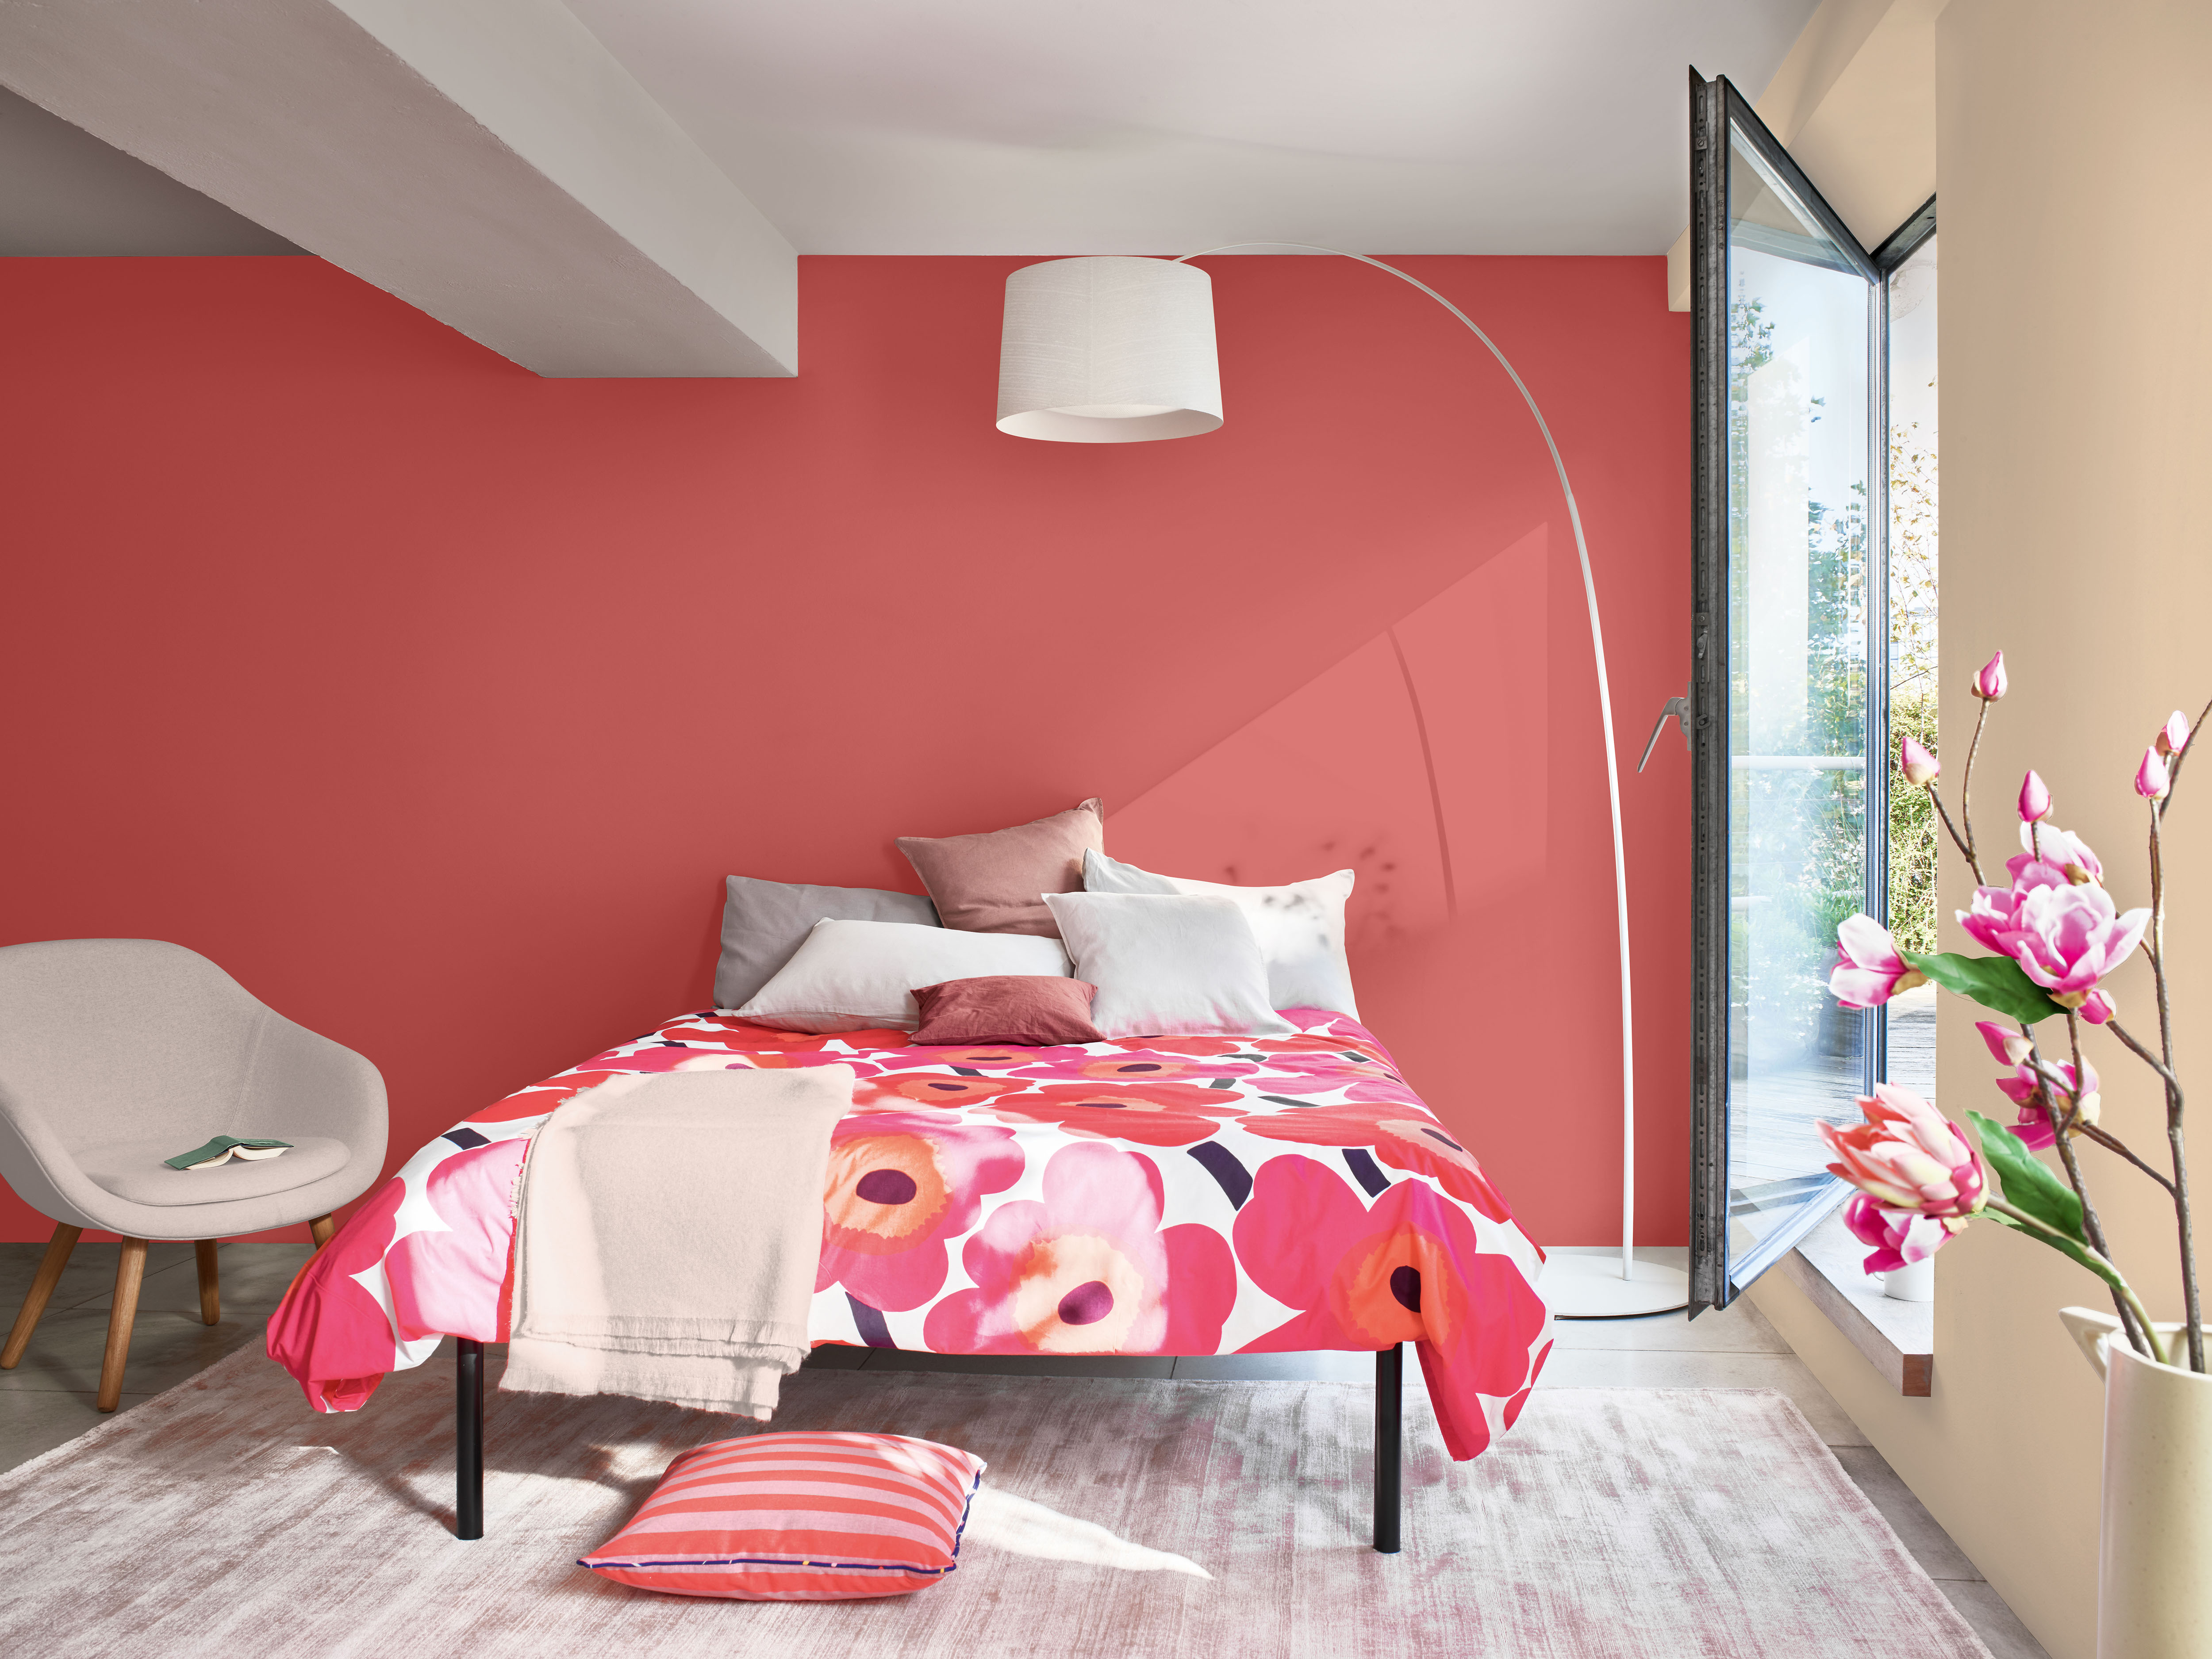 Dulux Heritage Coral Pink & Pearl Barley Bedroom